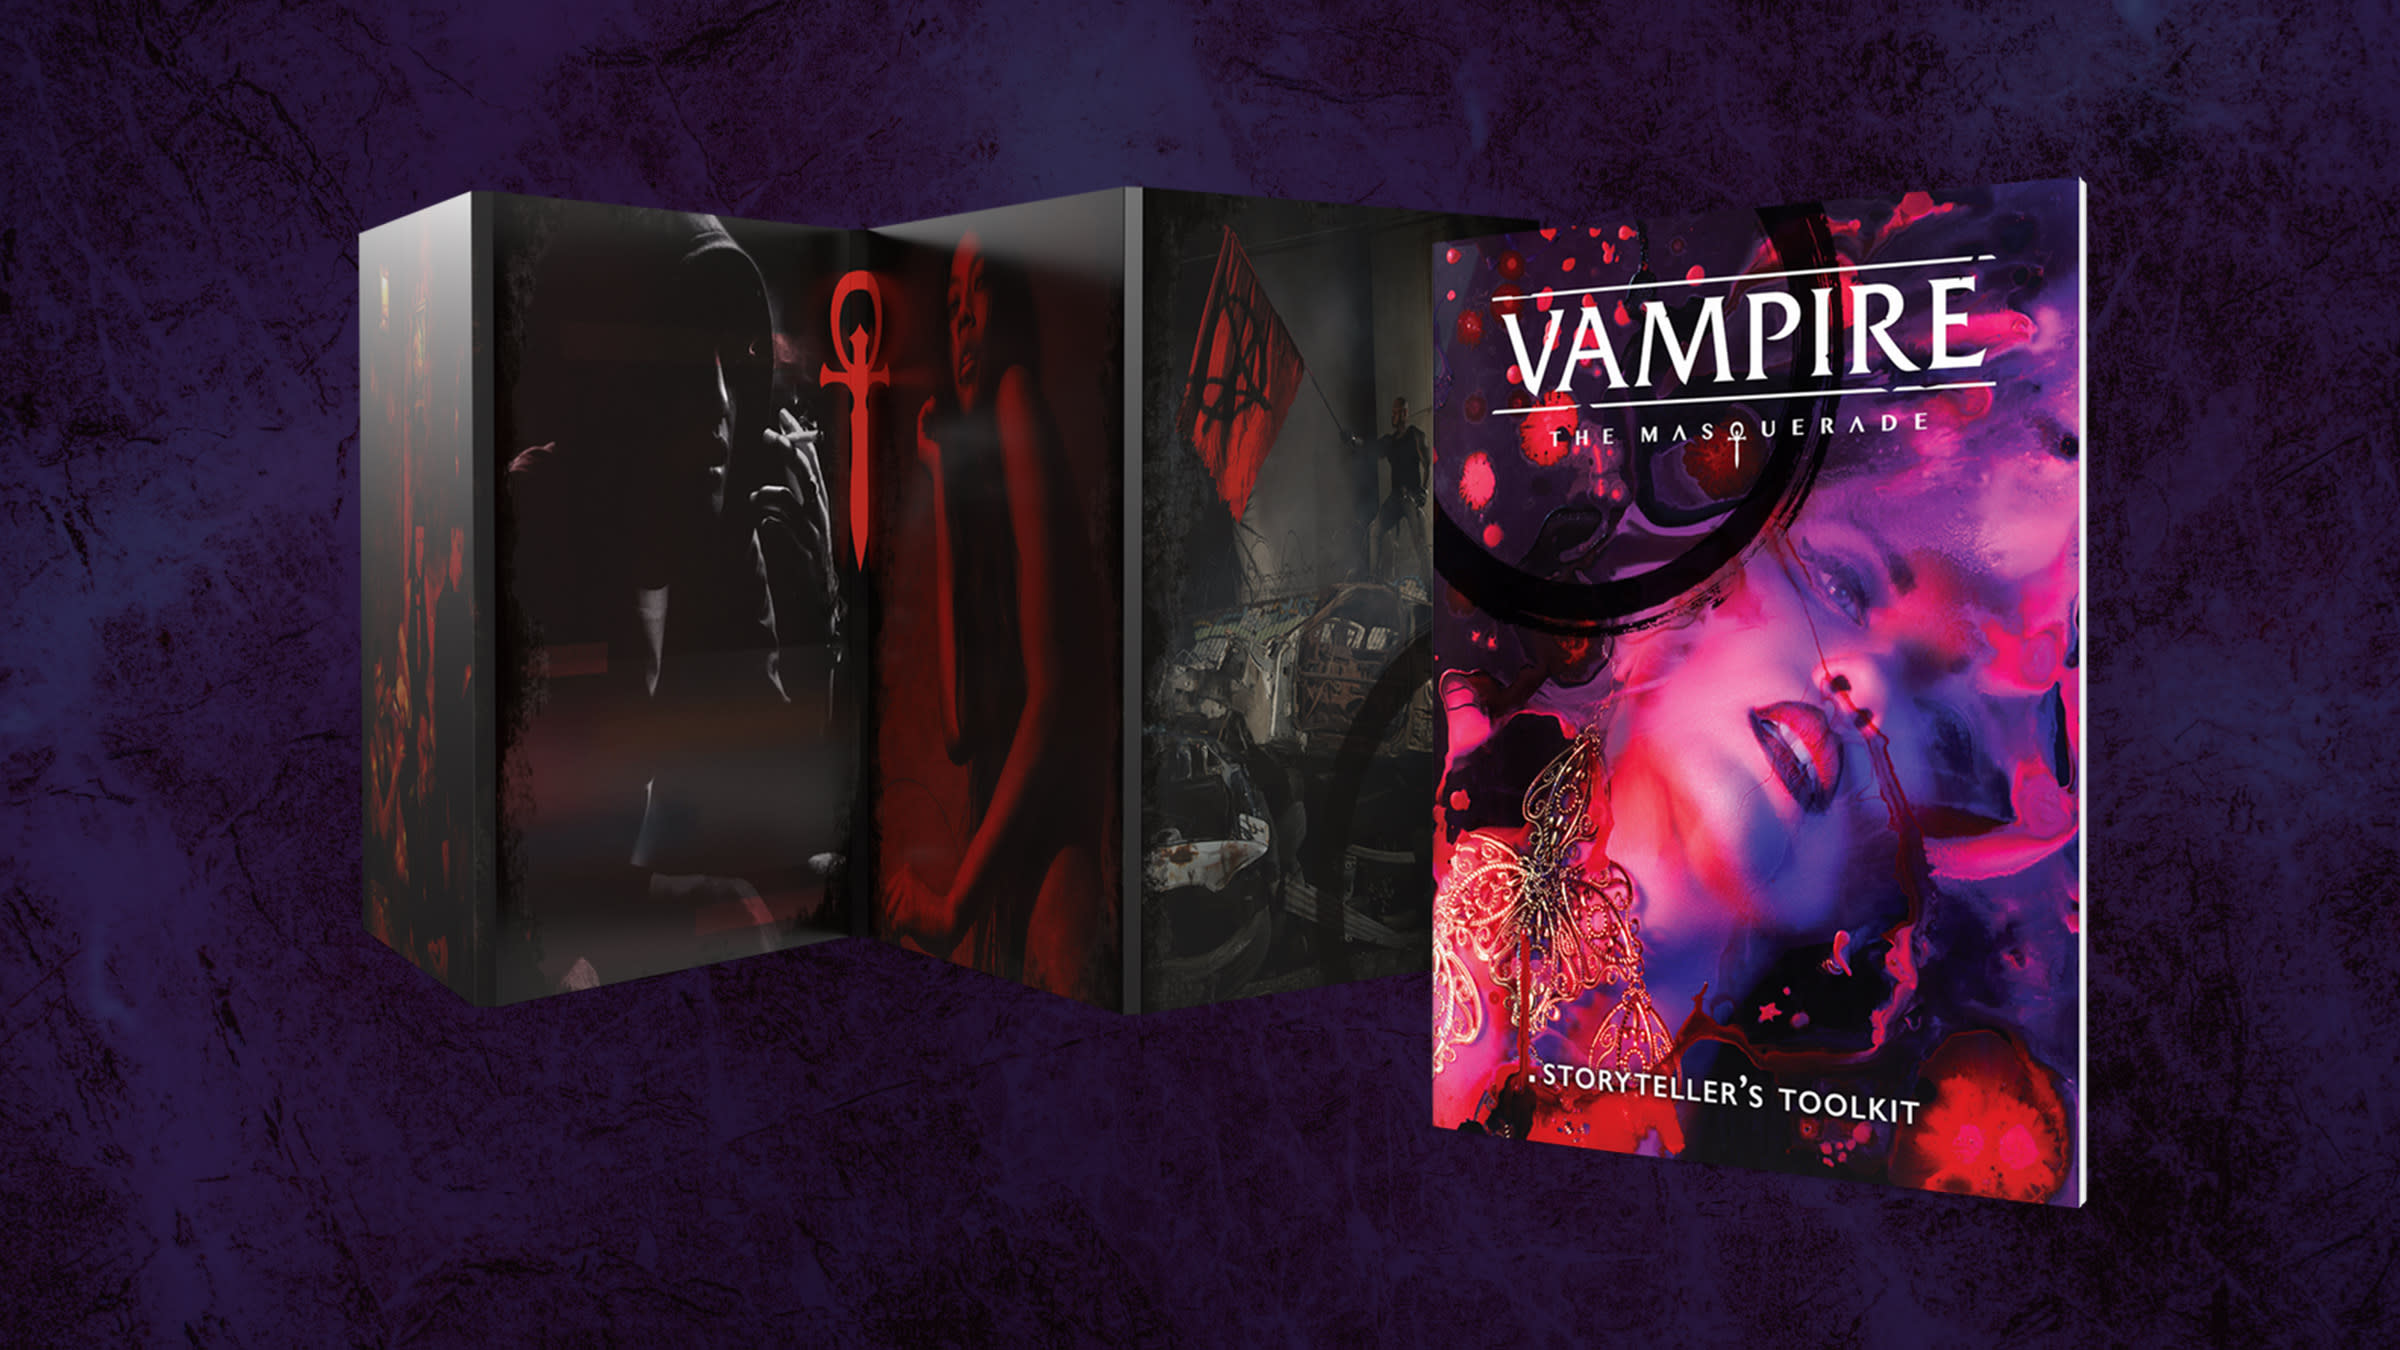 Vampire: The Masquerade Storyteller Screen & Kit